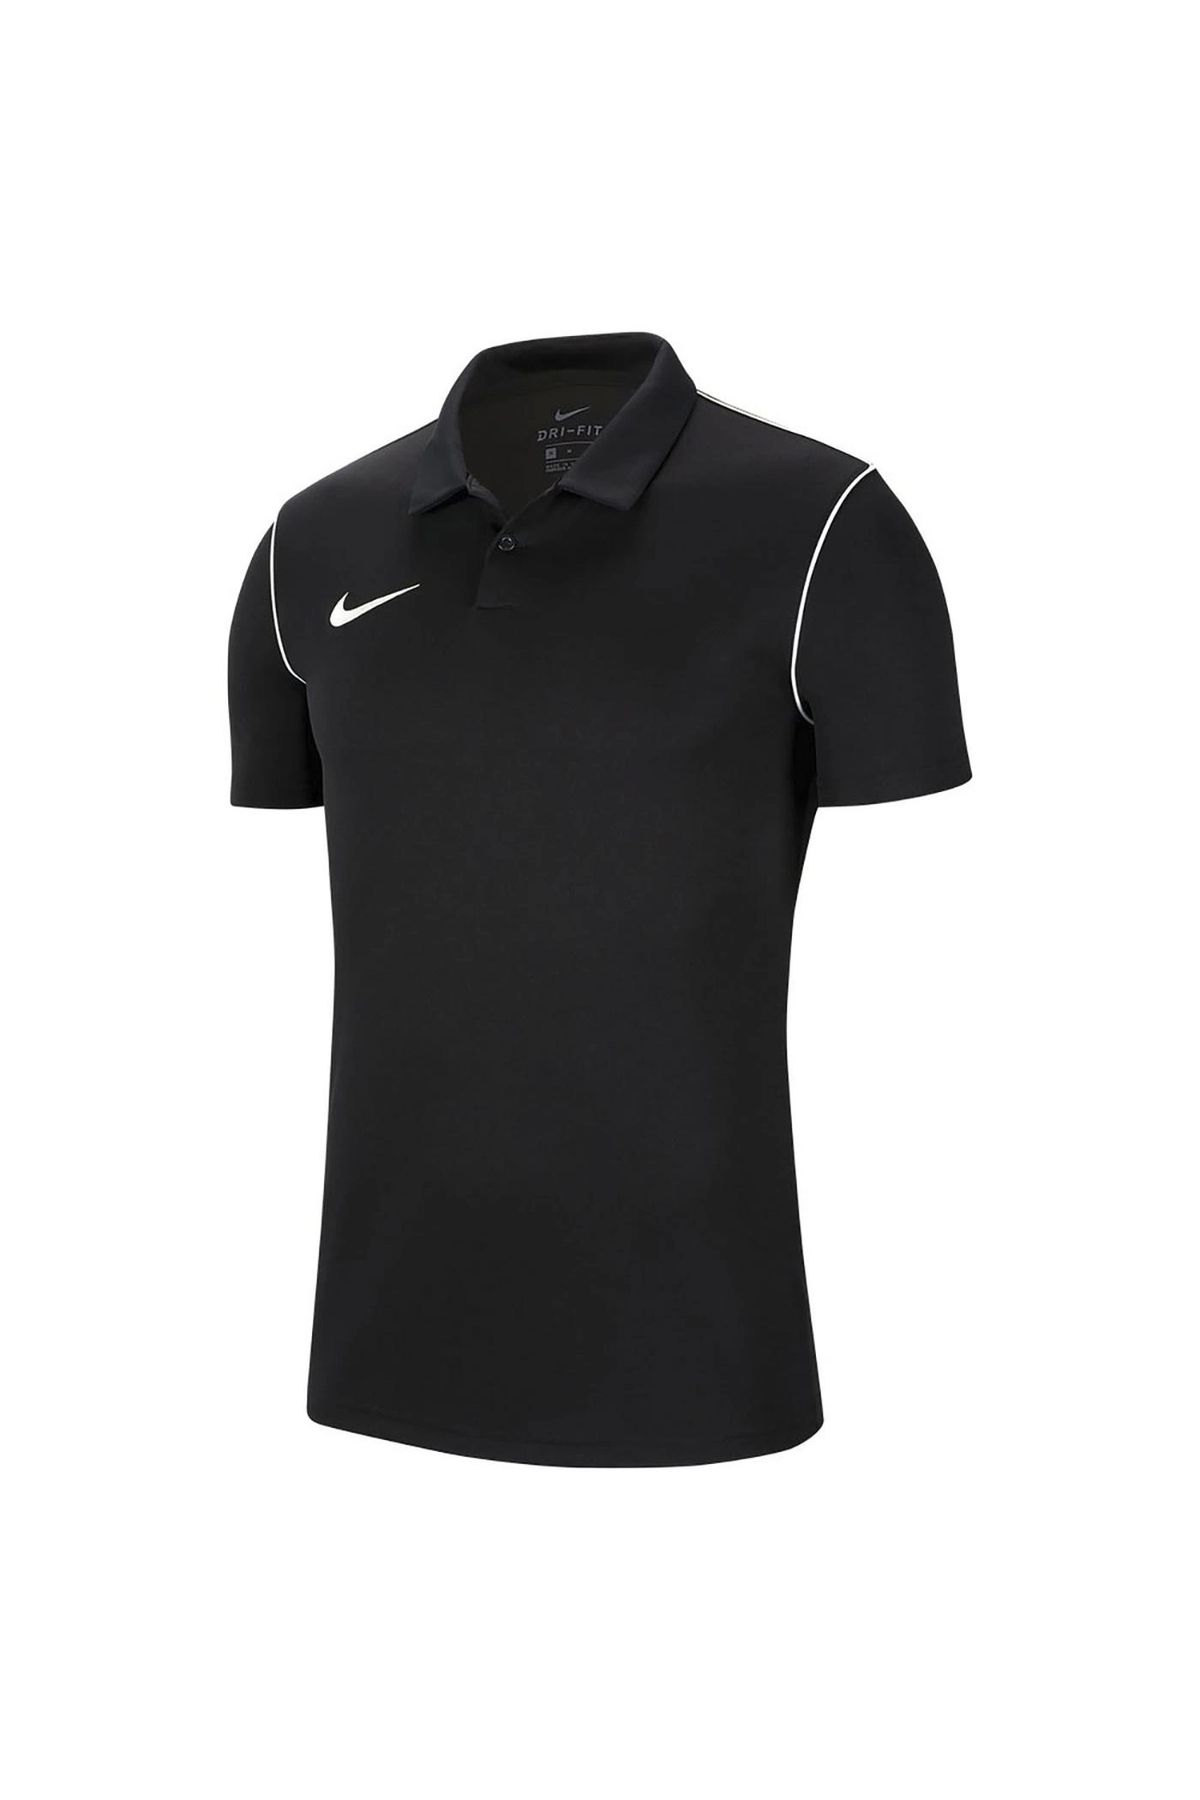 Nike Dry Park Erkek Siyah Futbol Polo Tişört Bv6879-010